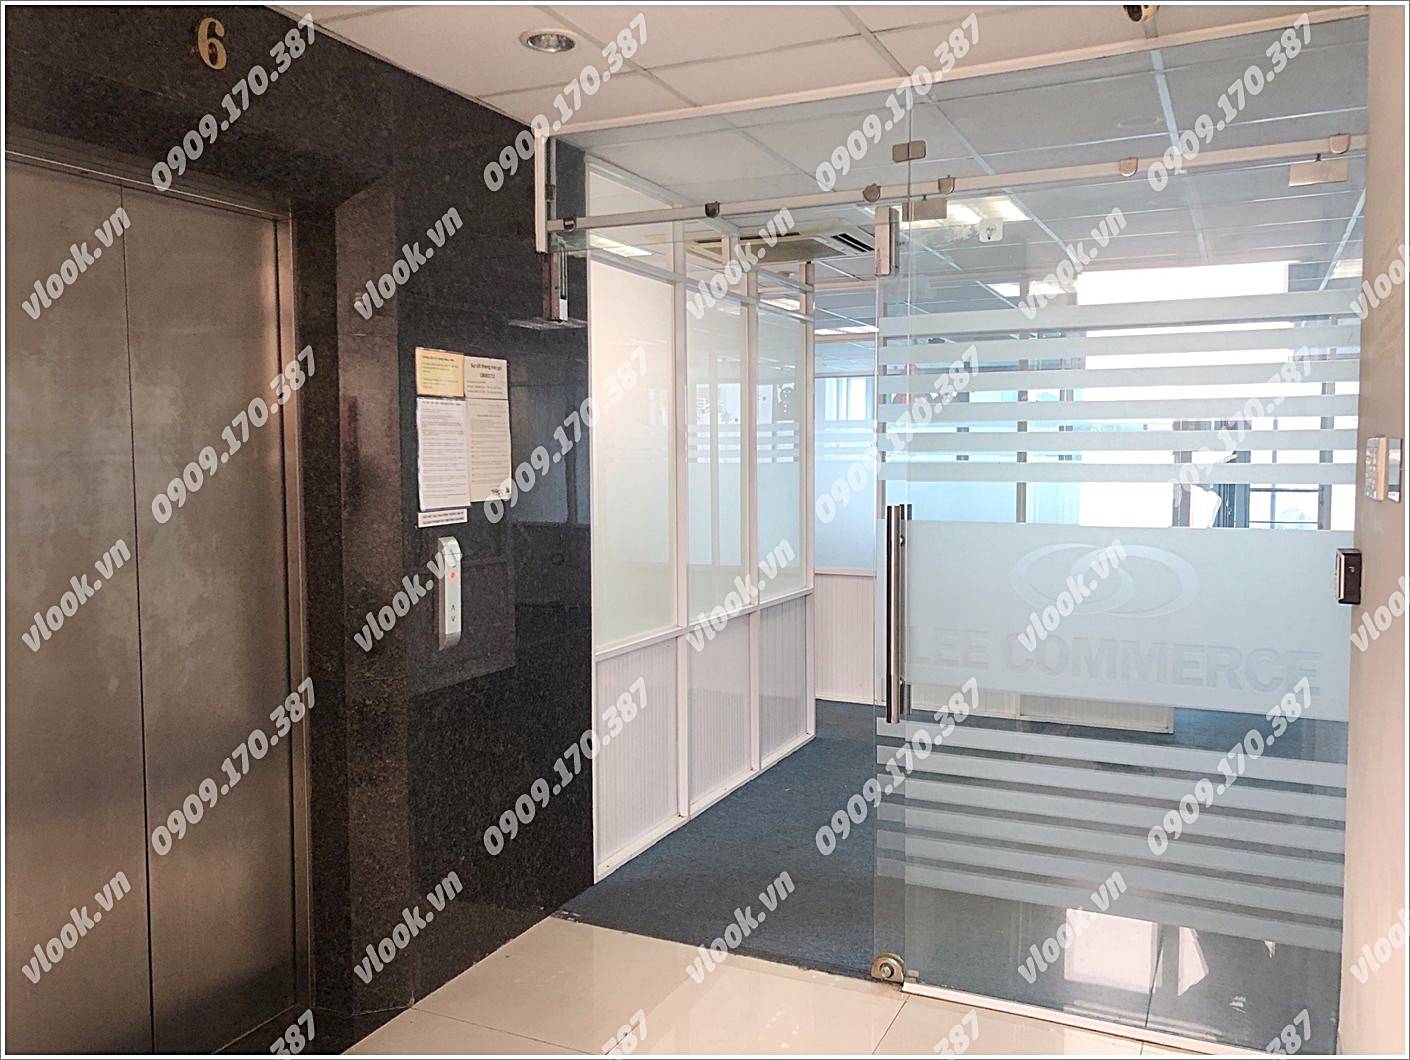 Cao ốc cho thuê văn phòng tòa nhà P&T Office Building, Phó Đức Chính, Quận 1, TPHCM - vlook.vn